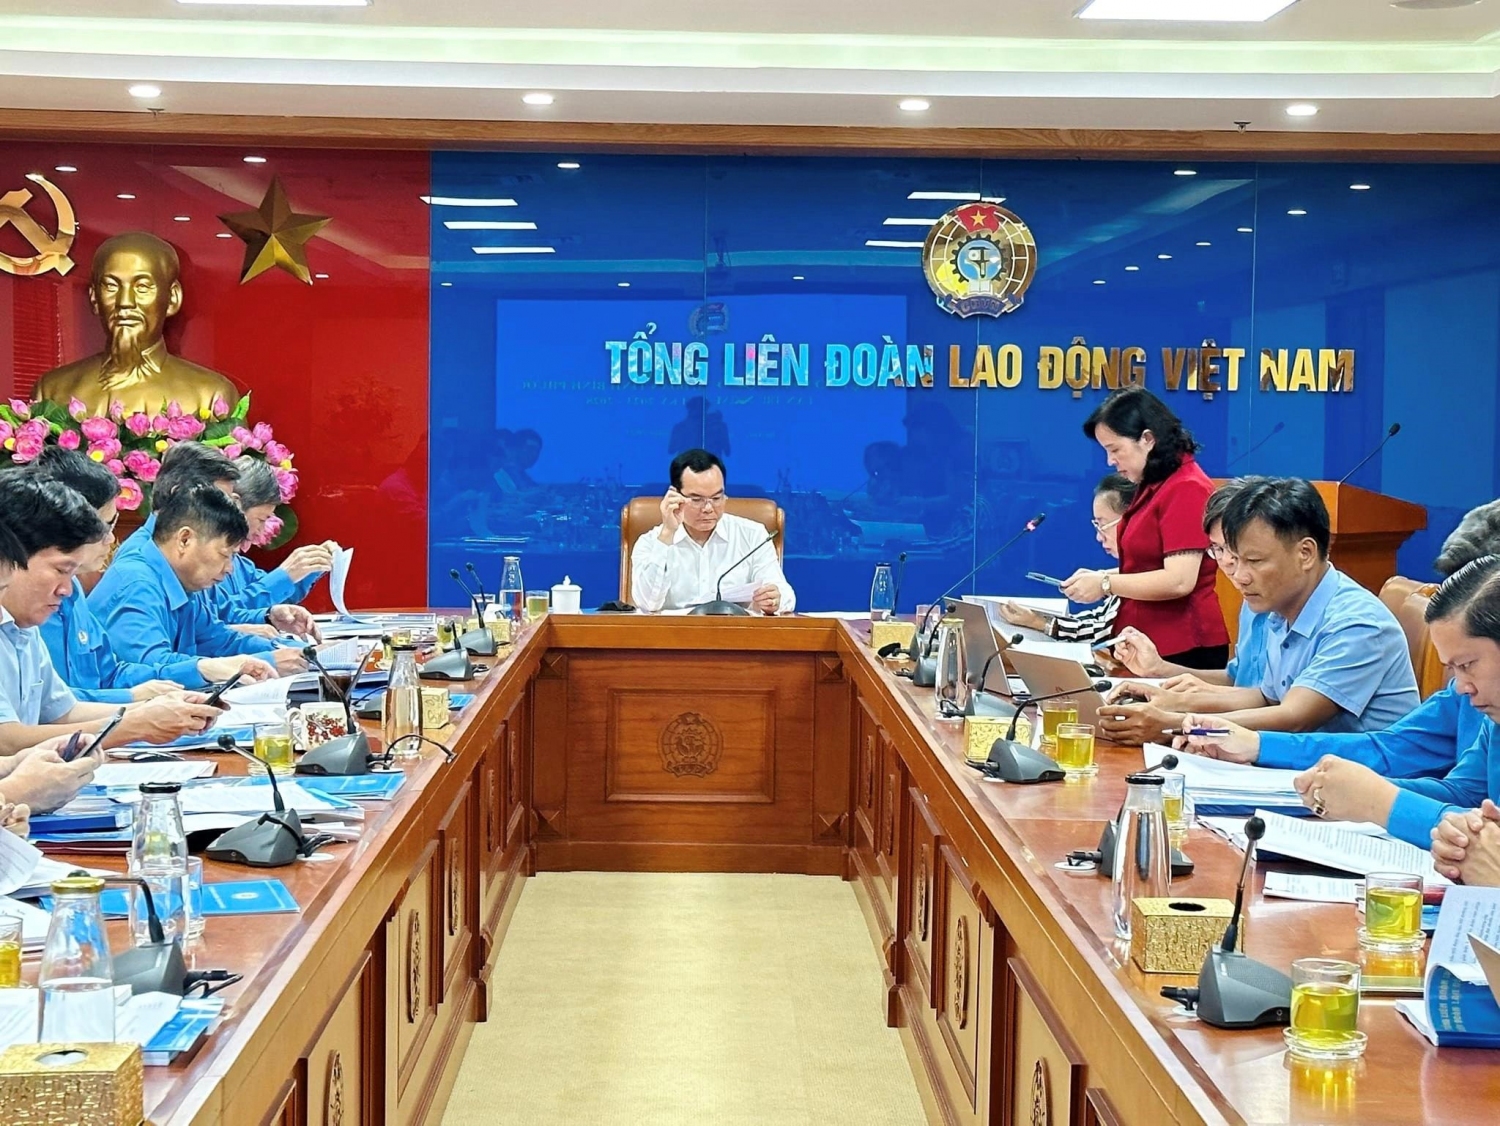 Tổng Liên đoàn Lao động Việt Nam làm việc với Ban Thường vụ LĐLĐ tỉnh Bình Phước về công tác tổ chức đại hội điểm cấp tỉnh (Nguồn ảnh: Công đoàn Bình Phước)